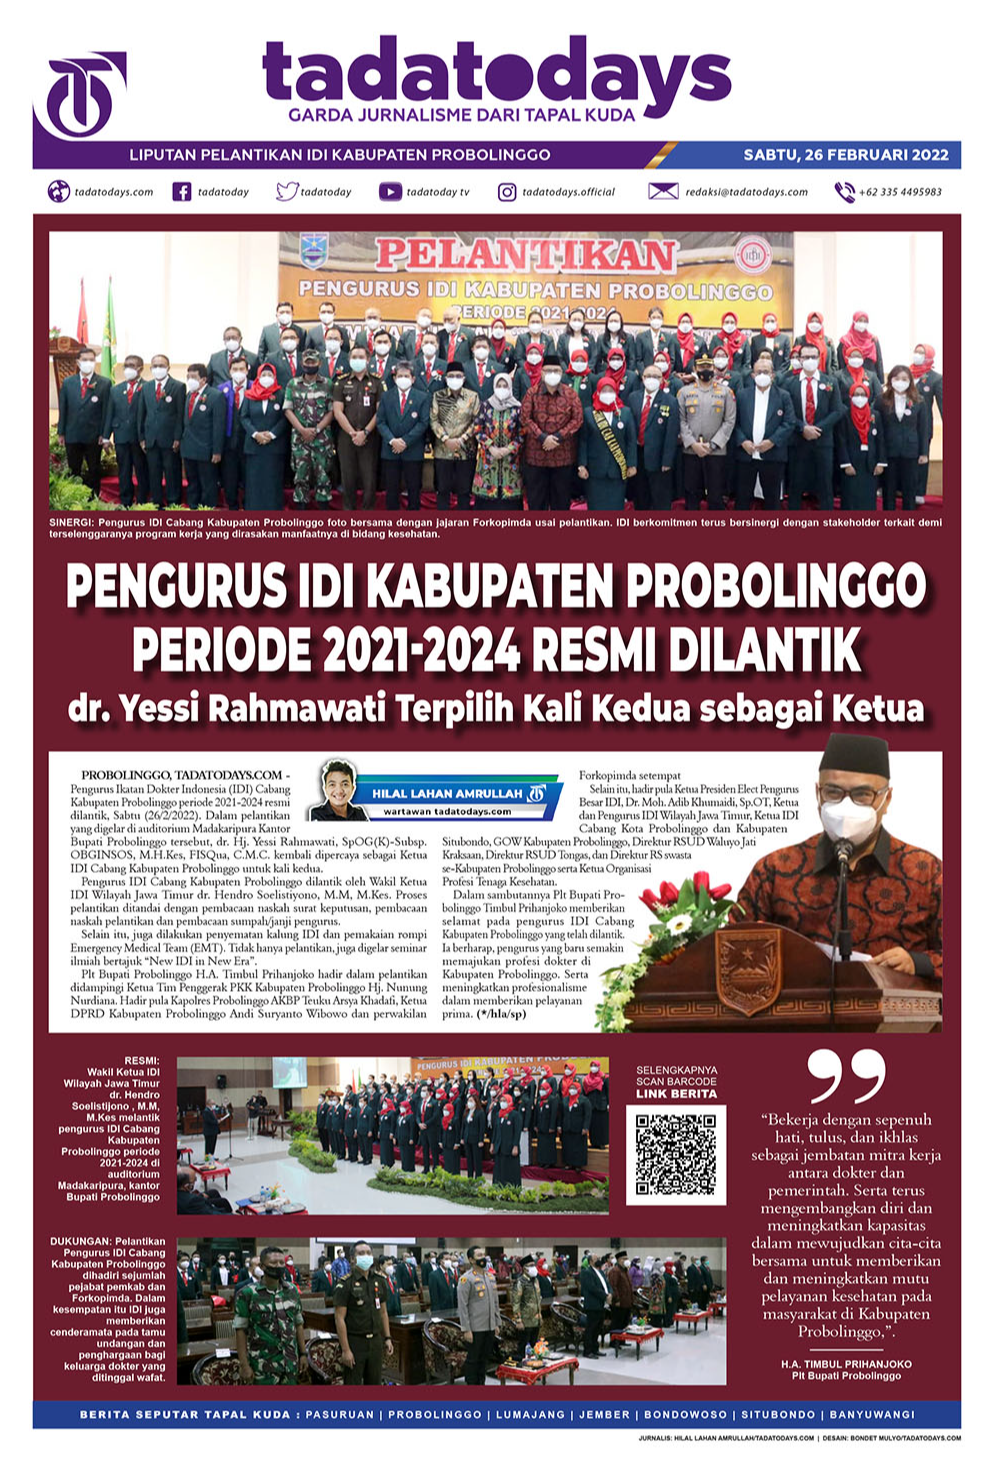 Pengurus IDI Kabupaten Probolinggo Periode 2021-2024 Dilantik, dr. Yessi Rahmawati Terpilih Kali Kedua sebagai Ketua